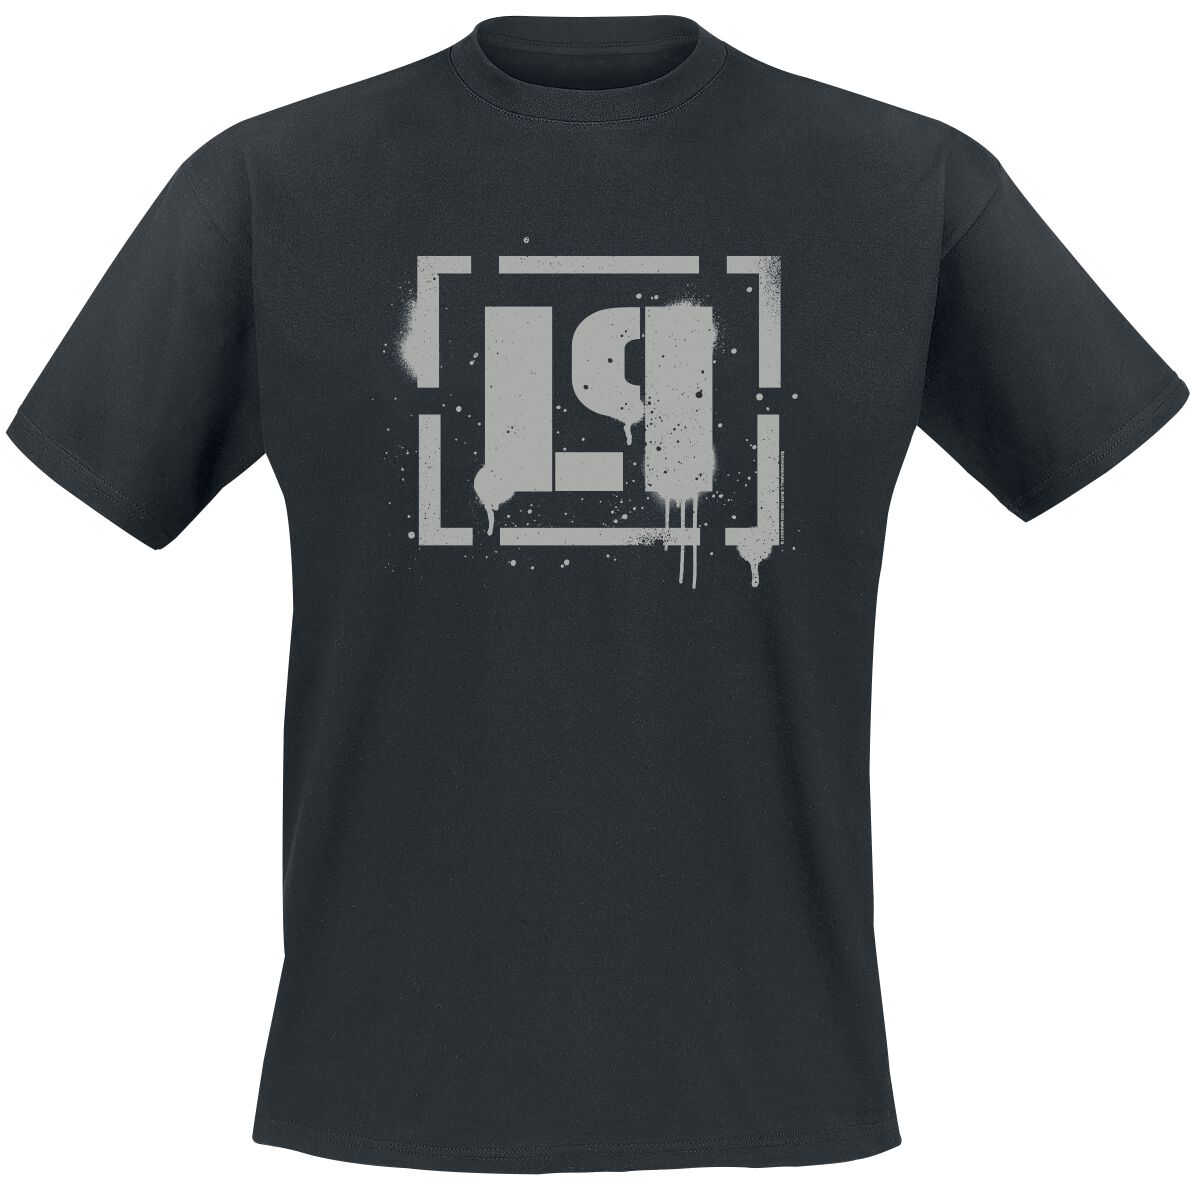 Linkin Park T-Shirt - Meteora Bracket Spray Logo - S bis 4XL - für Männer - Größe XXL - schwarz  - Lizenziertes Merchandise!